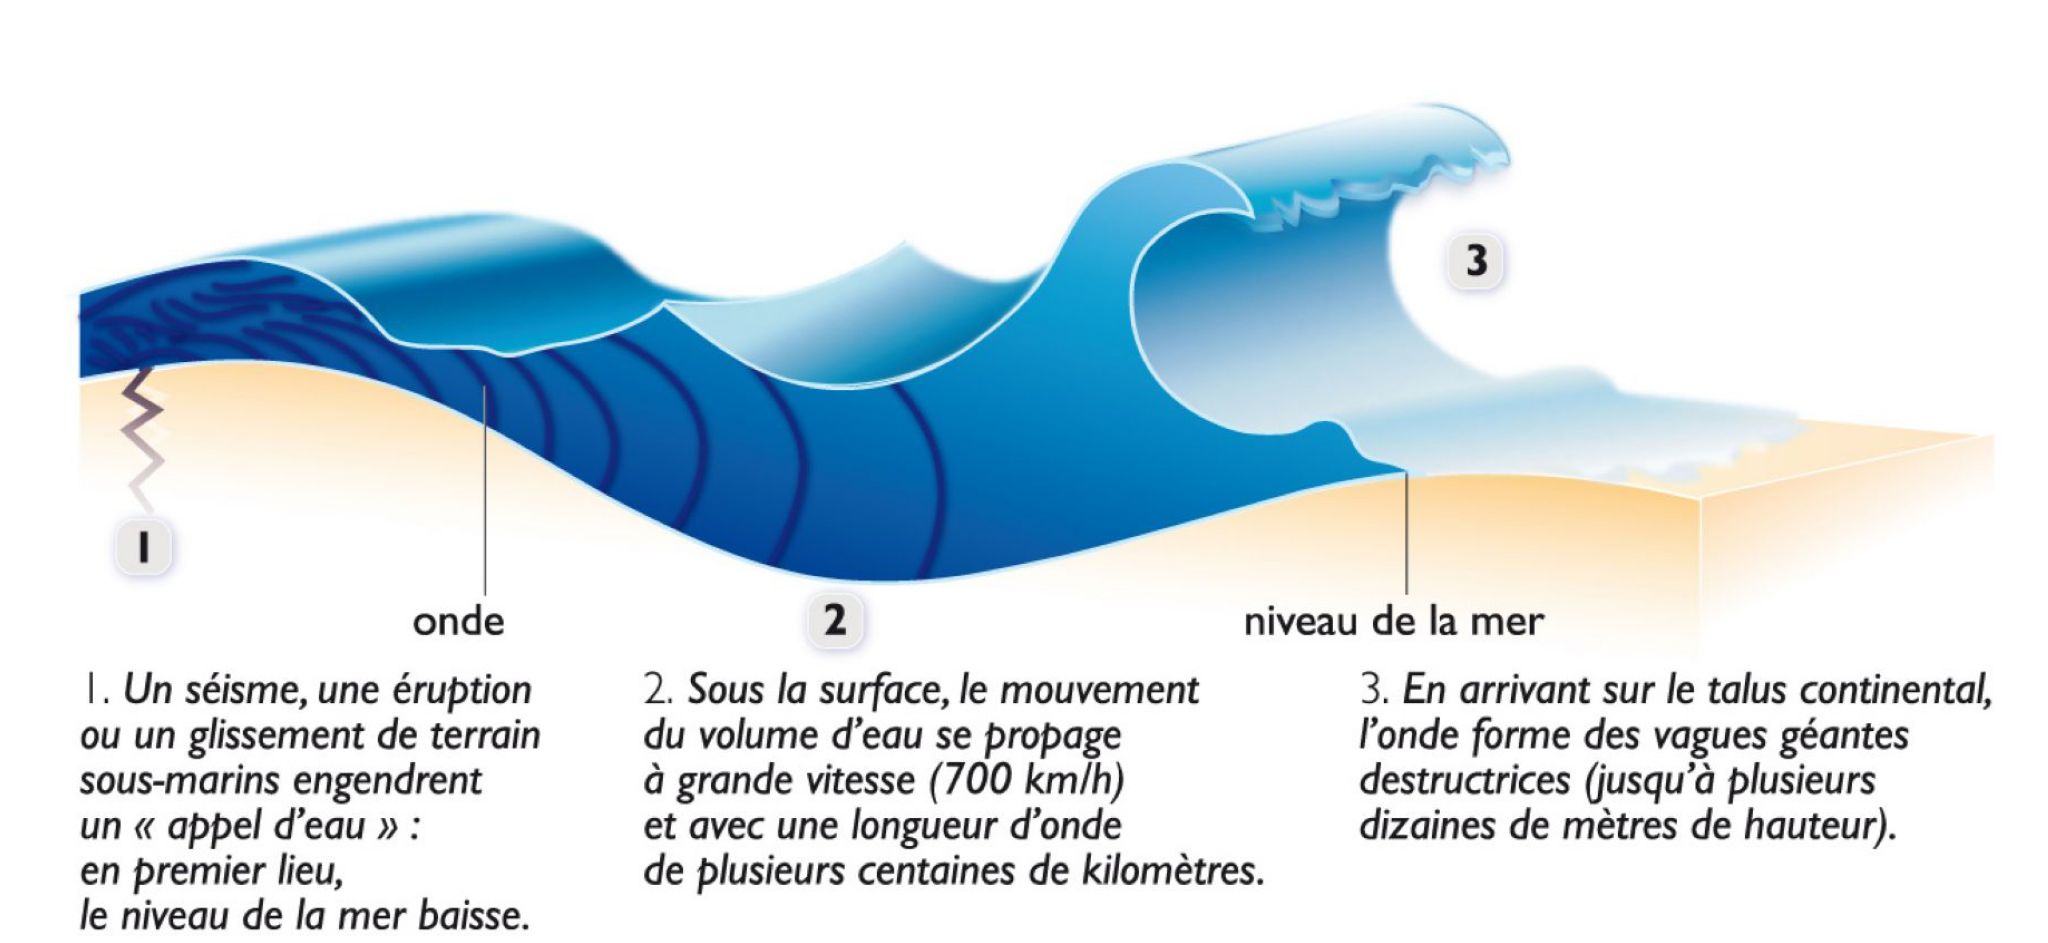 formation des vagues géantes (tsunami)